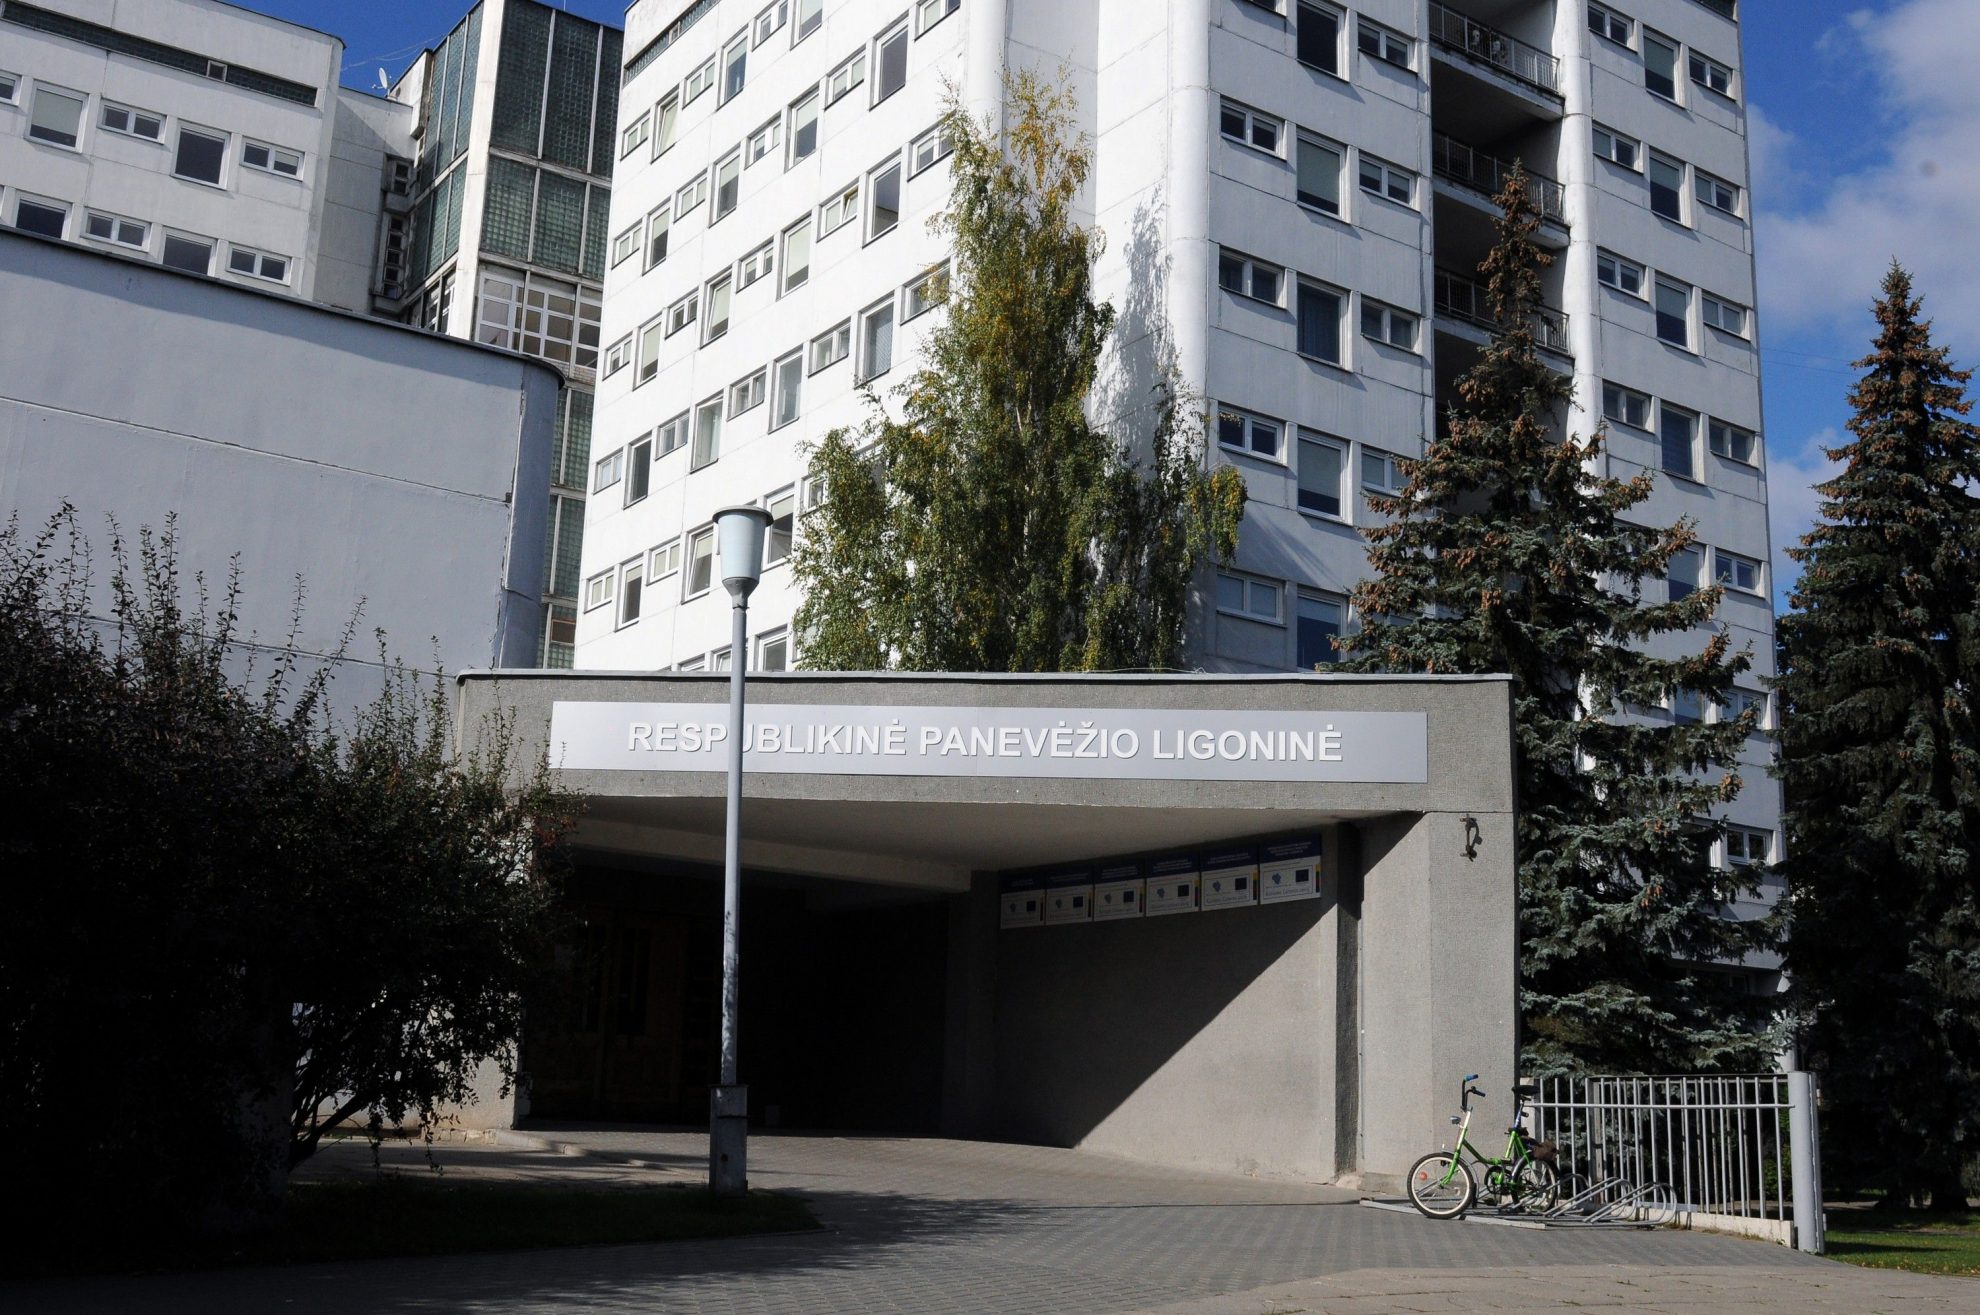 Respublikinę Panevėžio ligoninę ir toliau persekioja skandalai. Konkursą į jos direktoriaus vietą laimėjęs Arvydas Skorupskas į šias pareigas nebus paskirtas.